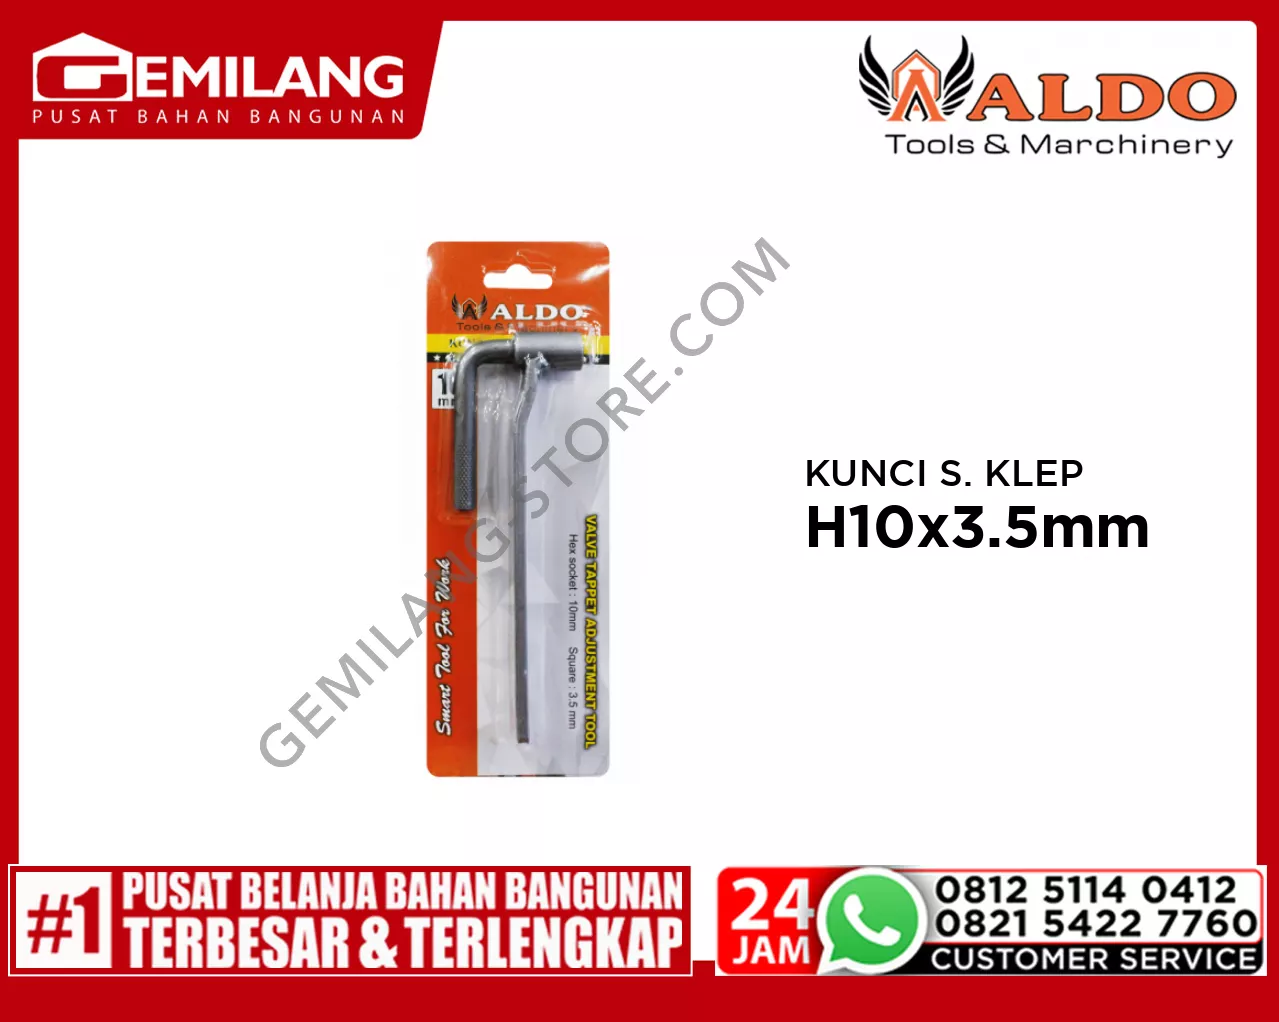 ALDO KUNCI SETELAN KLEP H10 x 3.5mm